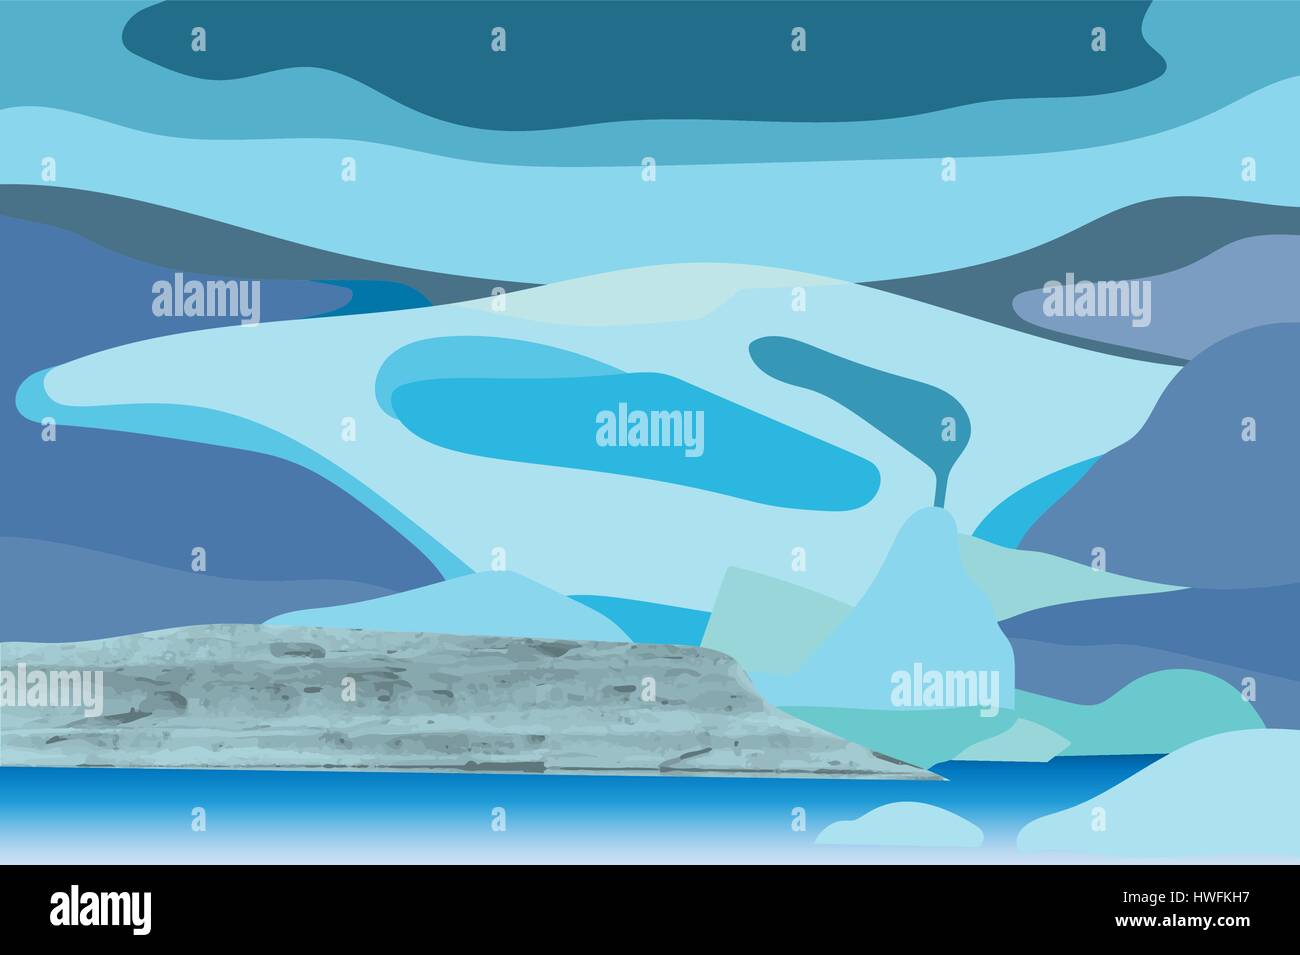 Vektor-Illustration des Gletschers mit natürlichen Textur Stock Vektor